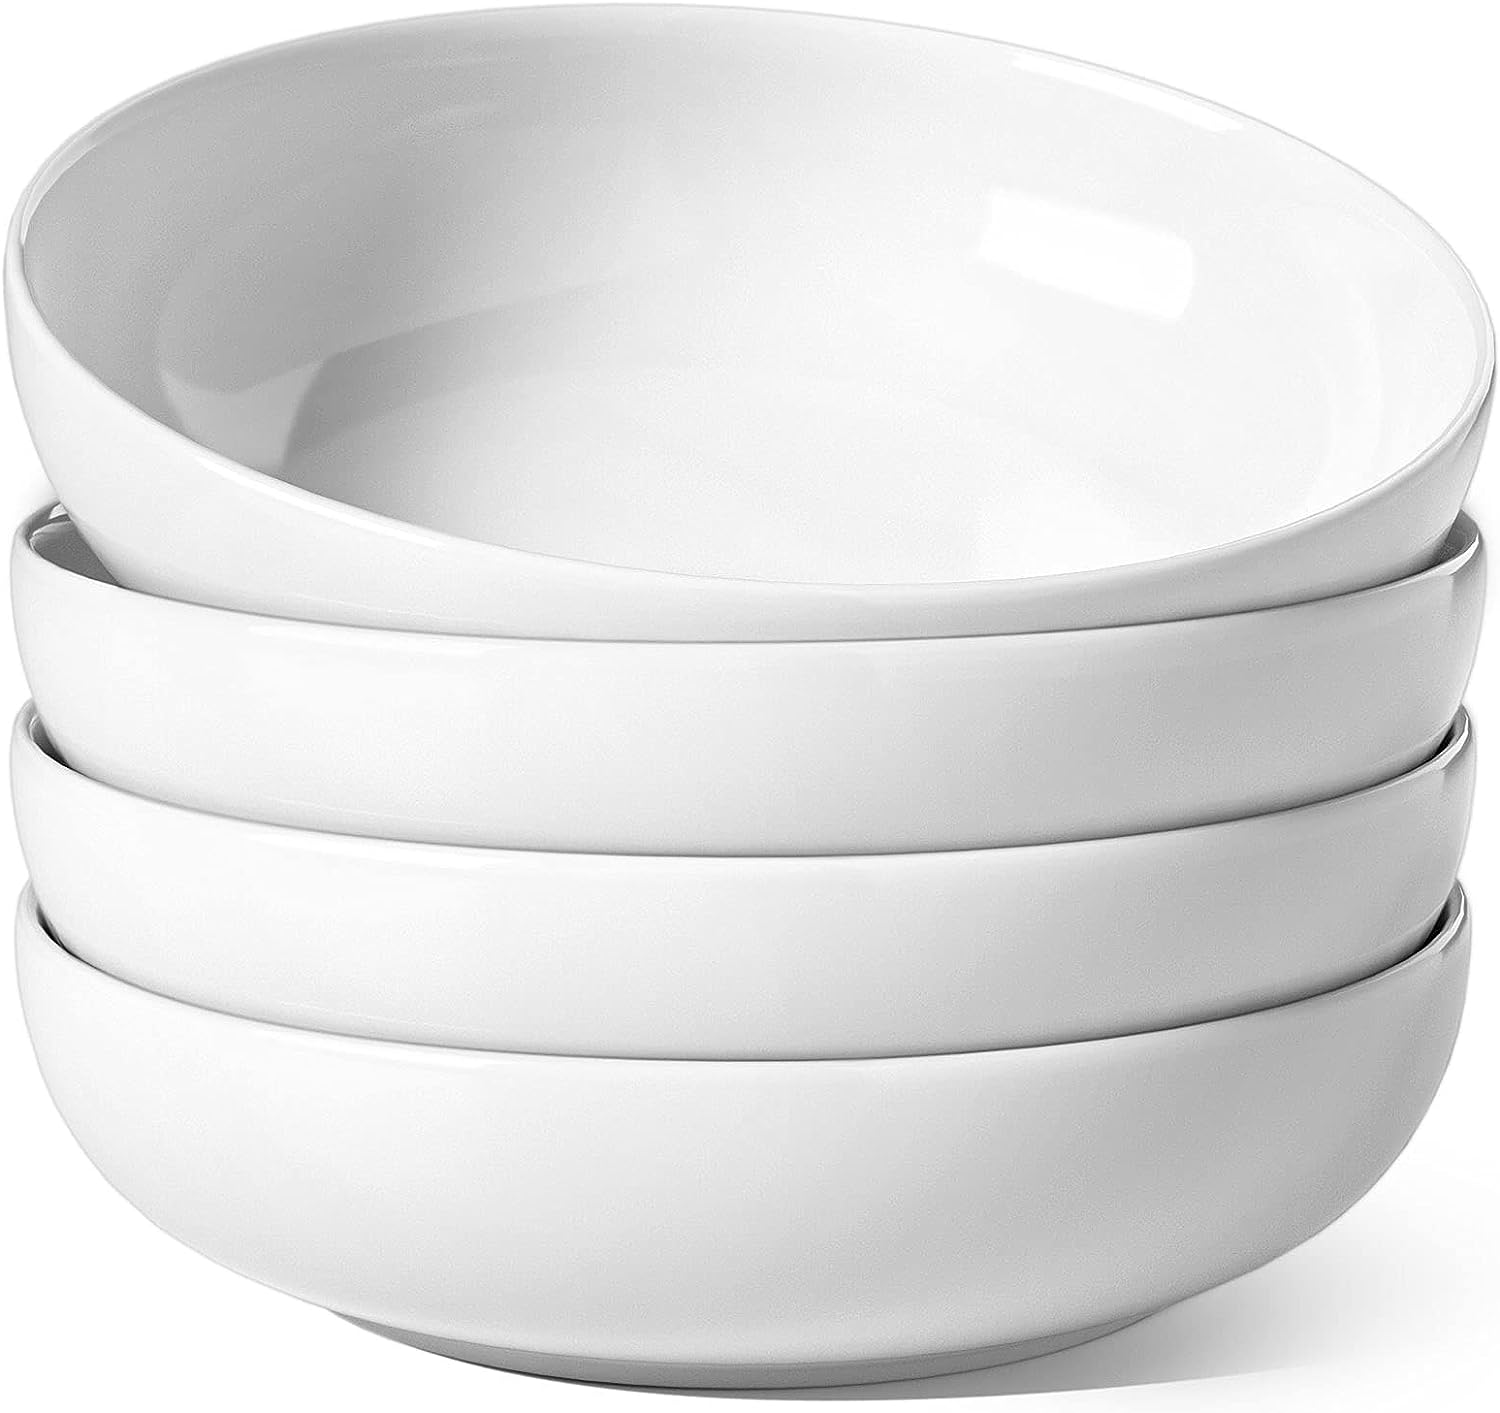 LE-TAUCI-Large-Salad-Bowls-45-Ounce-Pasta-Bowls